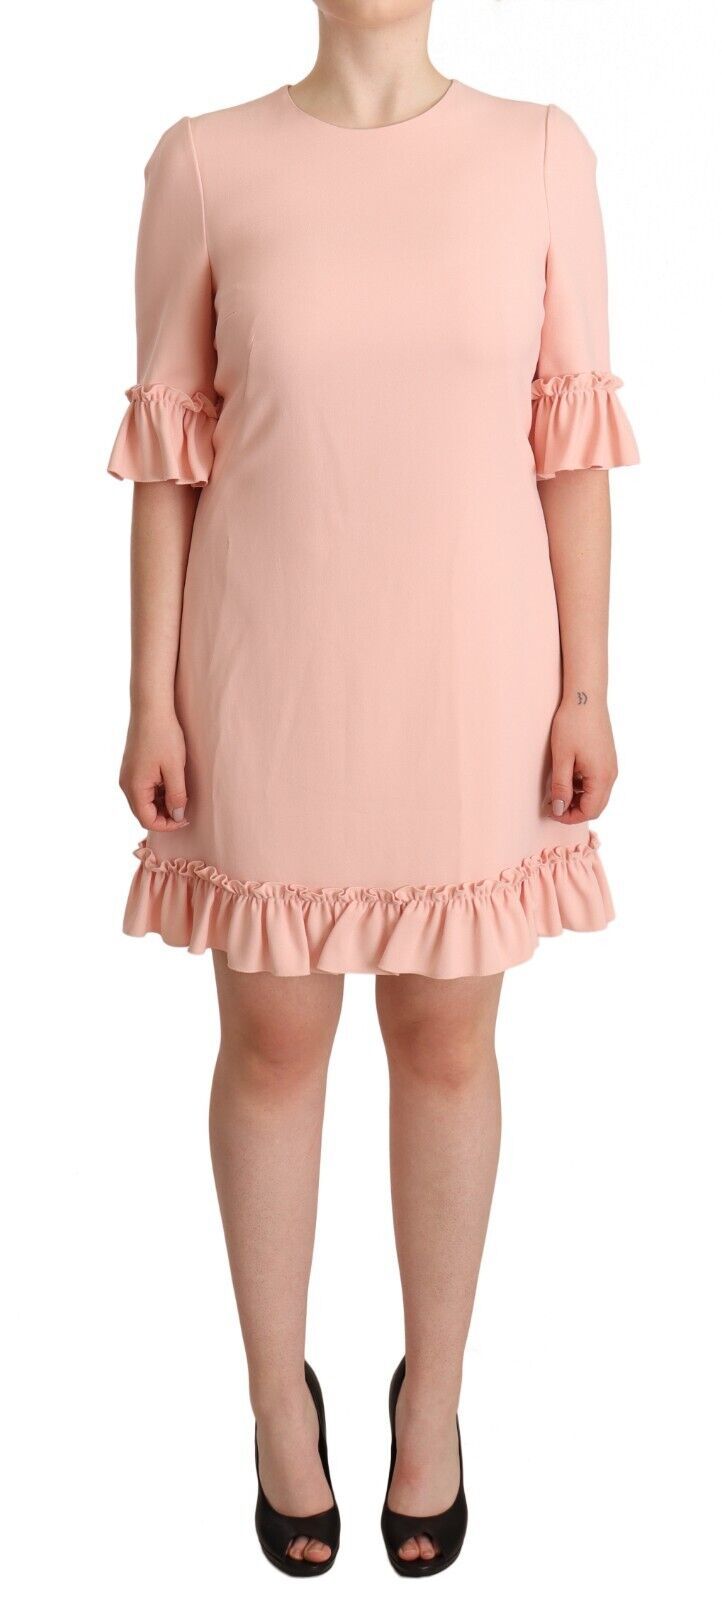 Ruffled Sleeve Sheath Dress in Pink